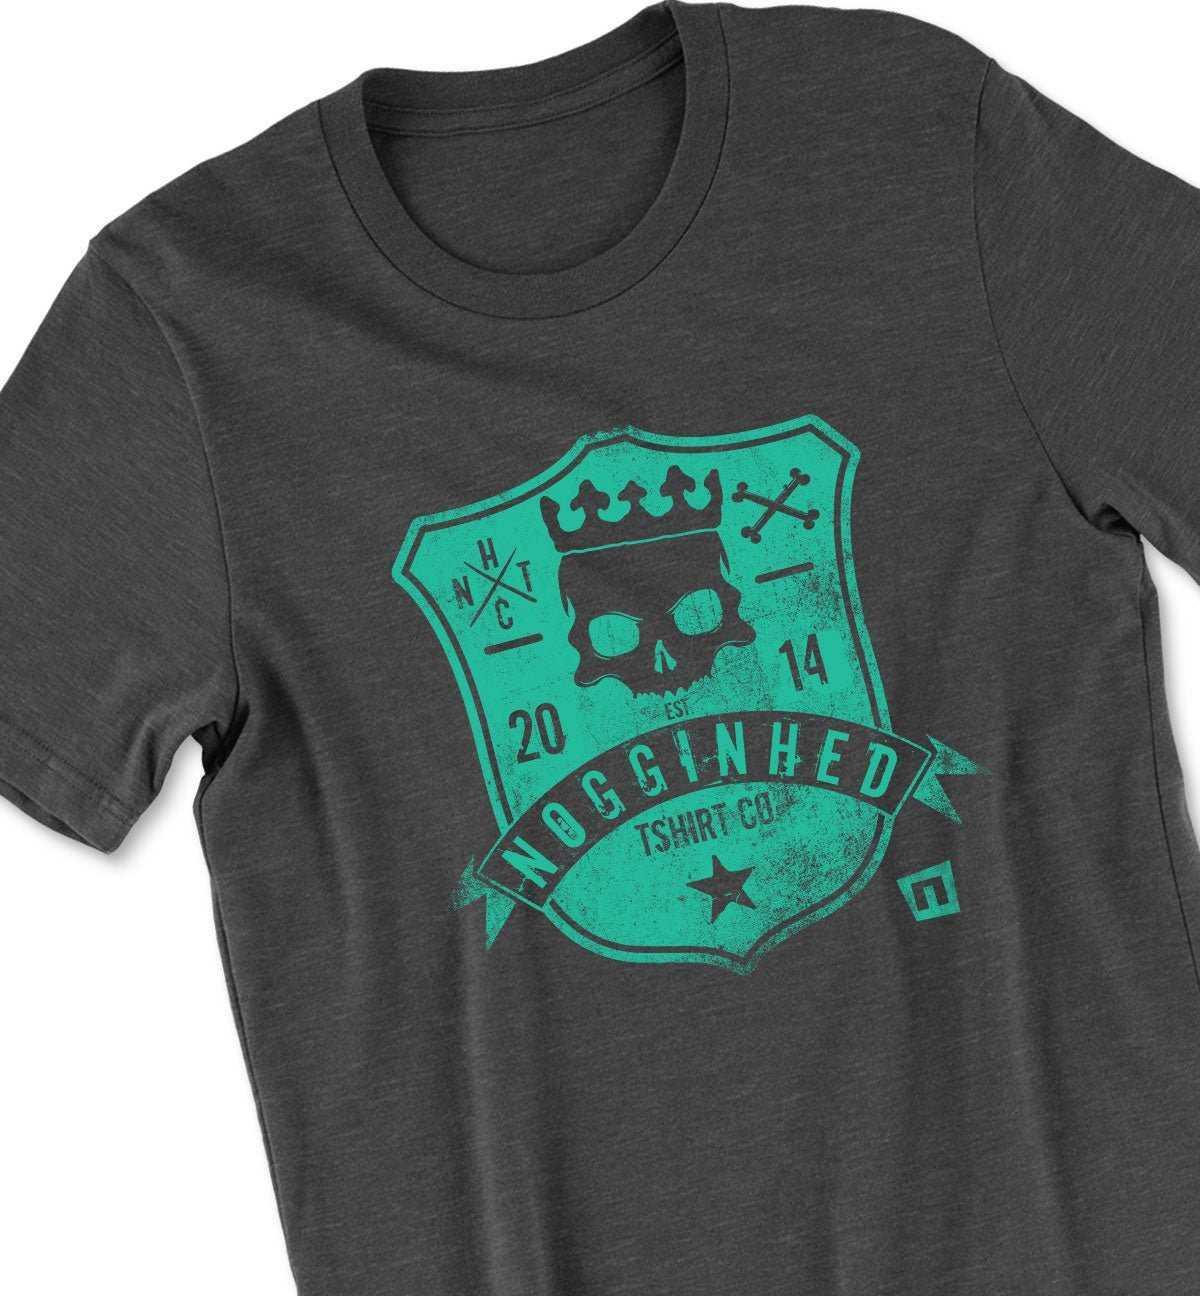 King Shield Tshirt - NOGGINHED